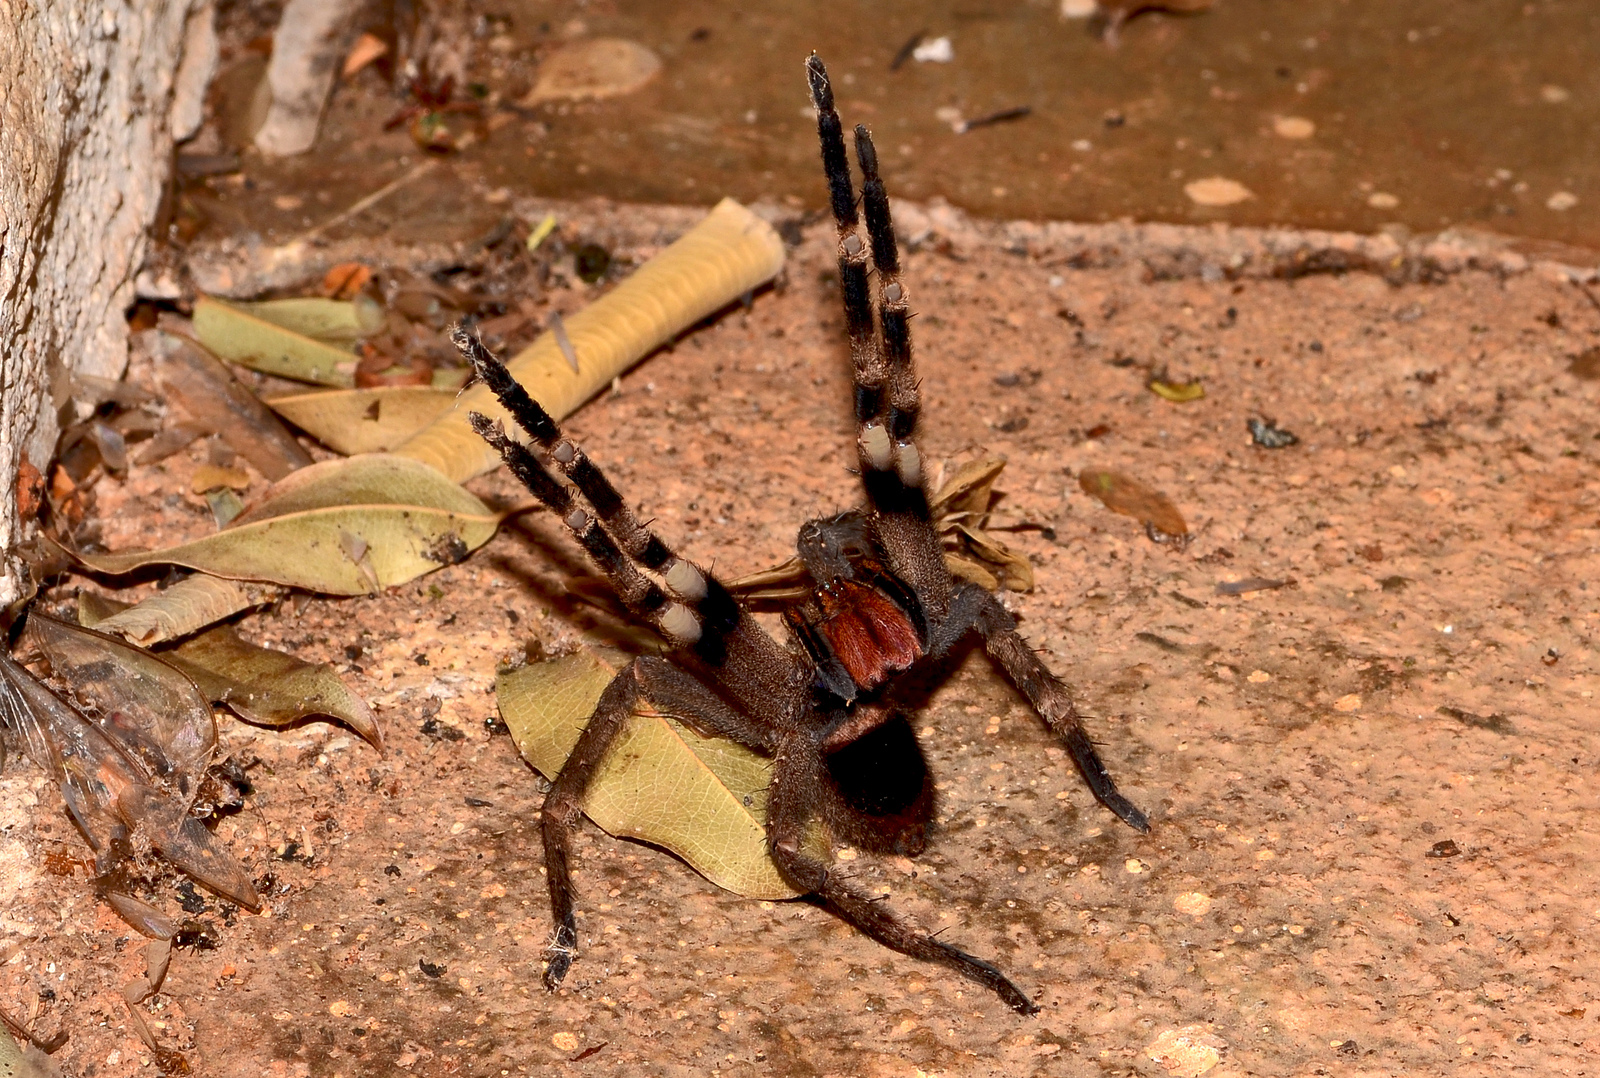 Brazilian Wandering Spider.